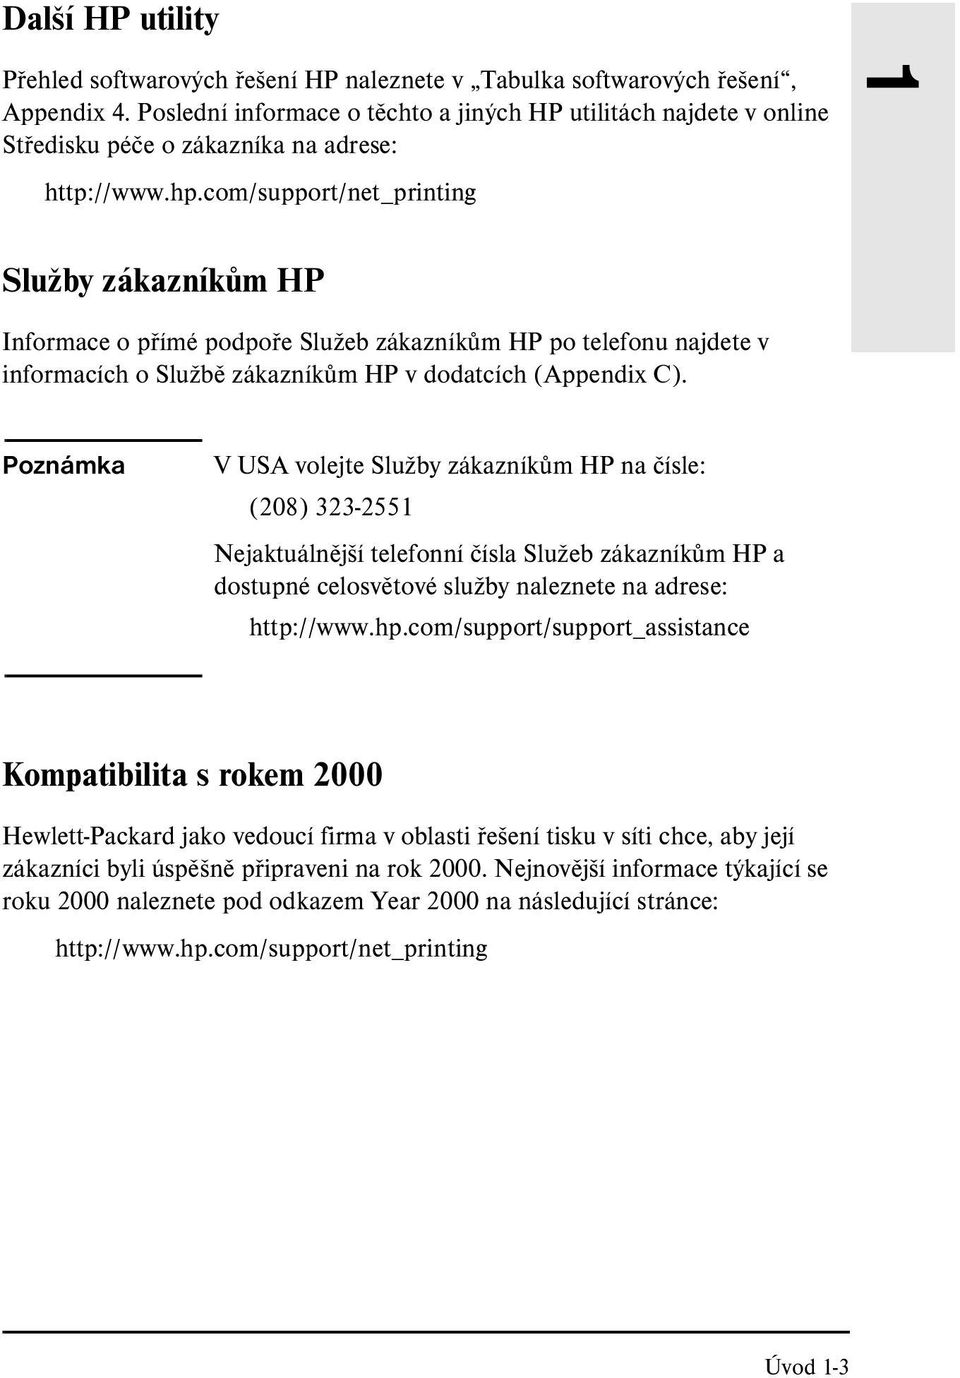 com/support/net_printing 1 Služby zákazníkům HP Informace o přímé podpoře Služeb zákazníkům HP po telefonu najdete v informacích o Službě zákazníkům HP v dodatcích (Appendix C).